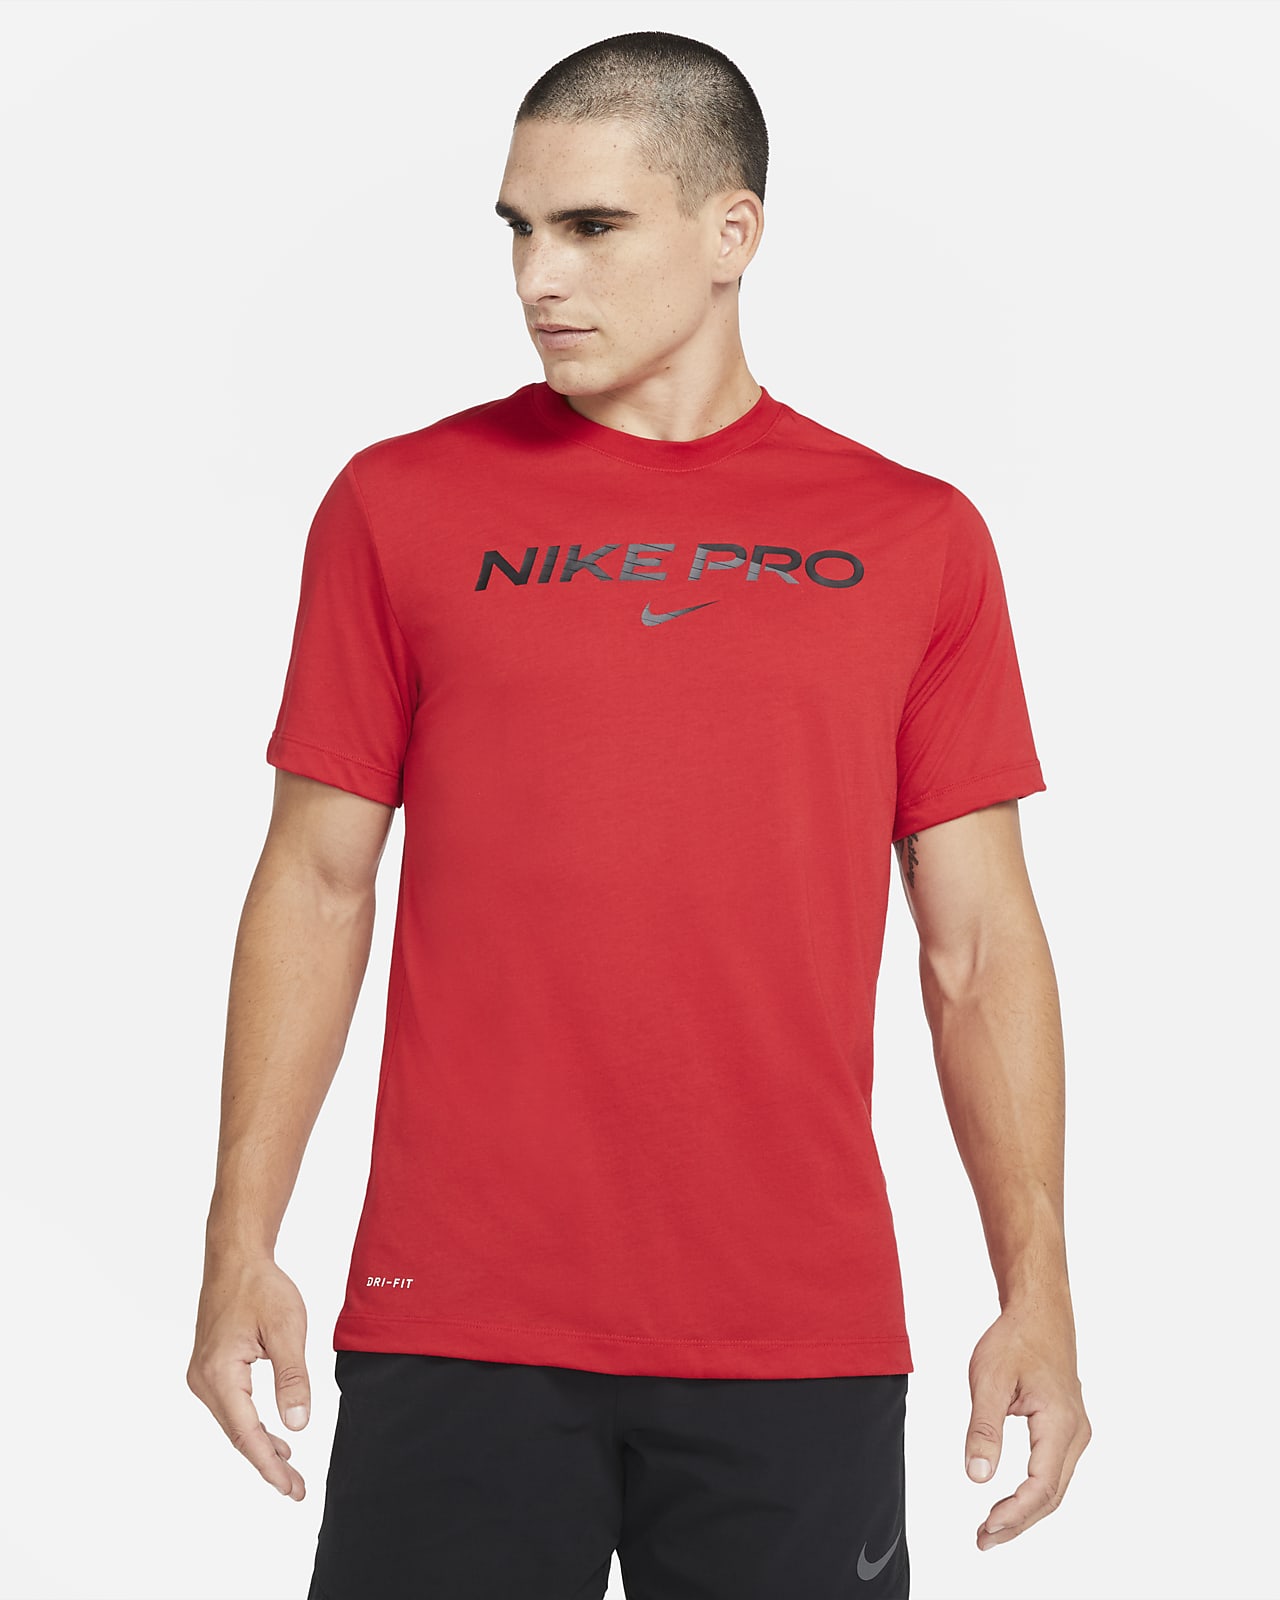 Nike Pro Men's T-Shirt. Nike CH